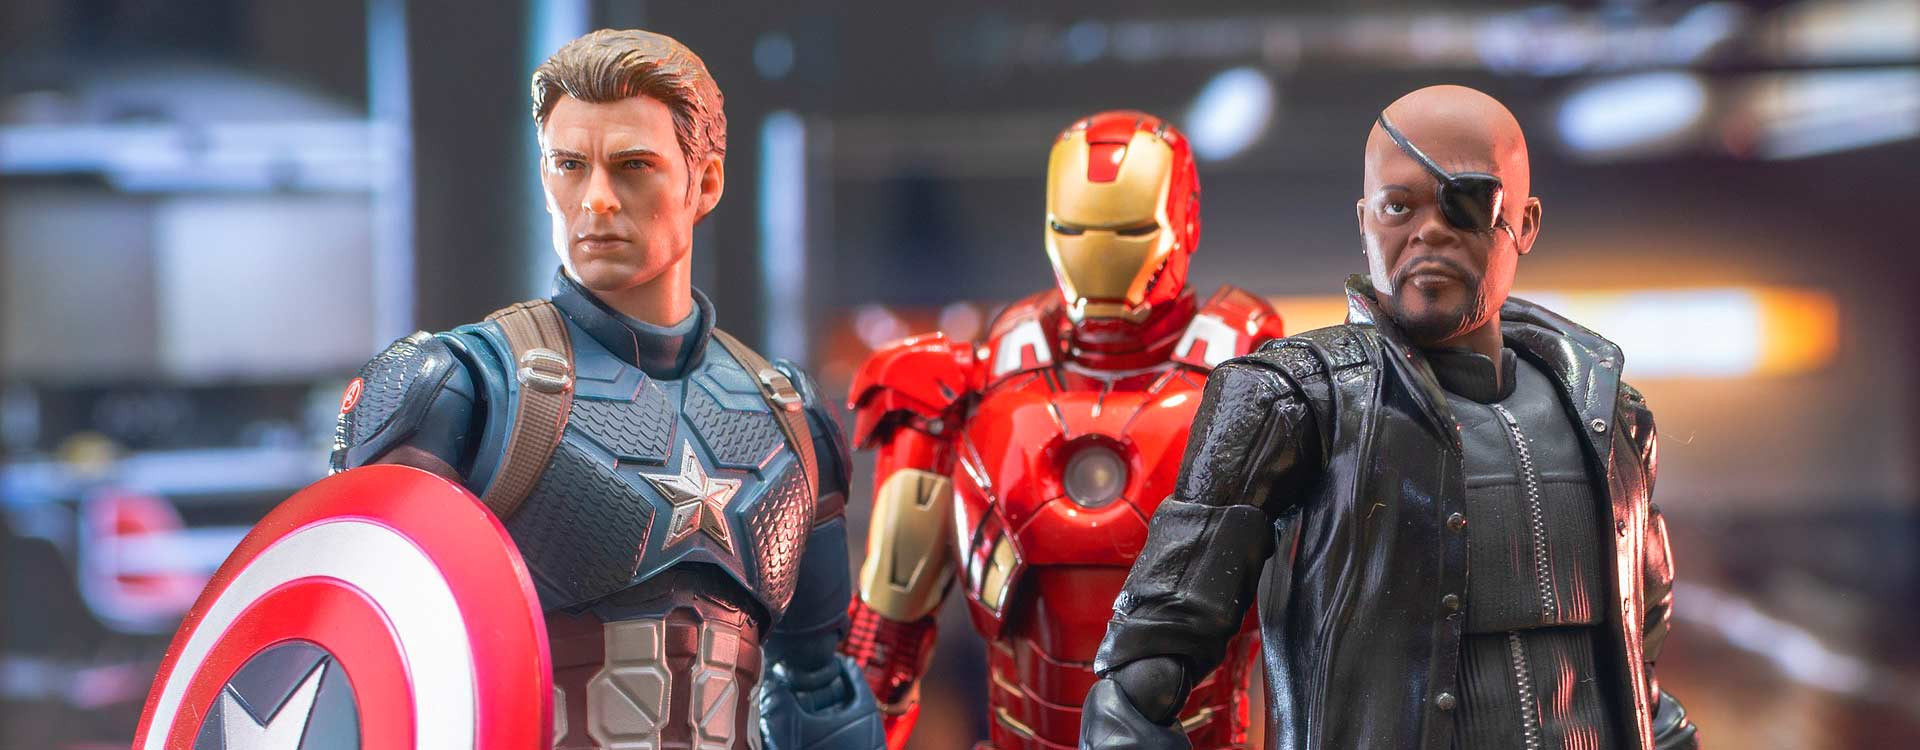 Capitan America Personaggi Marvel Avengers Gioco Per Bambini Supereroi 30  Cm 